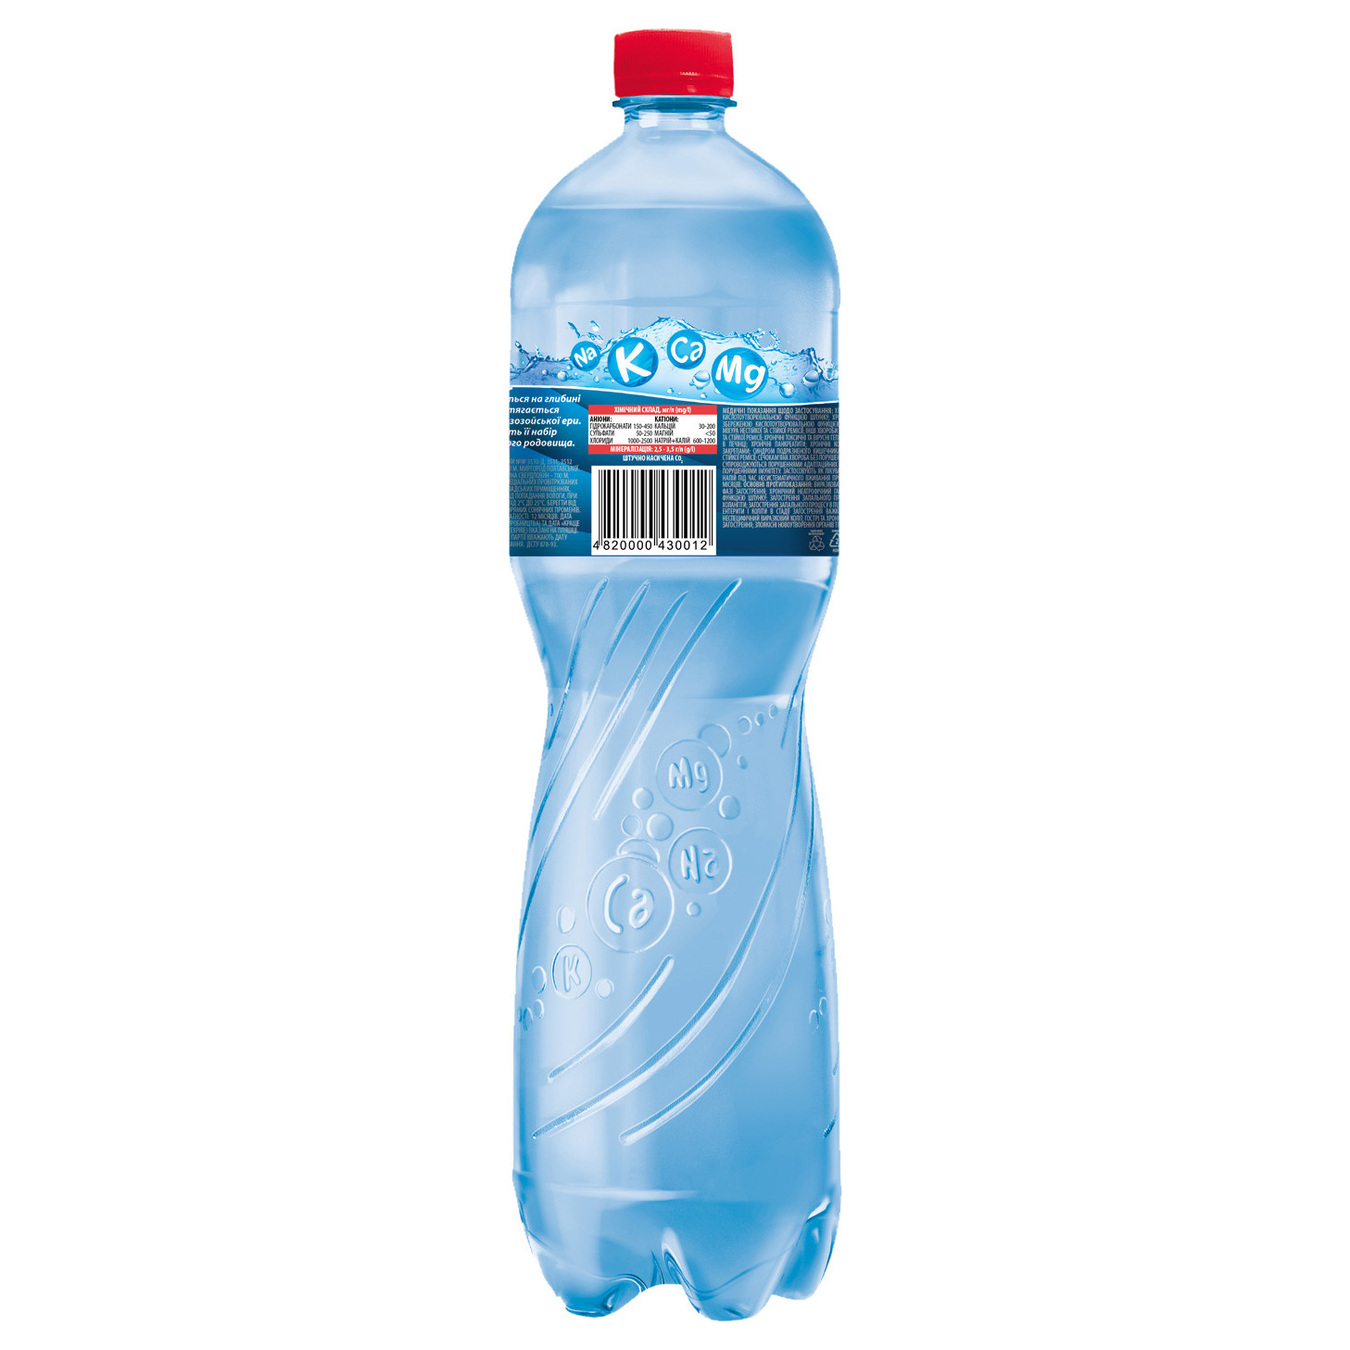 Sparkling water Mirgorodska 1,5l 2